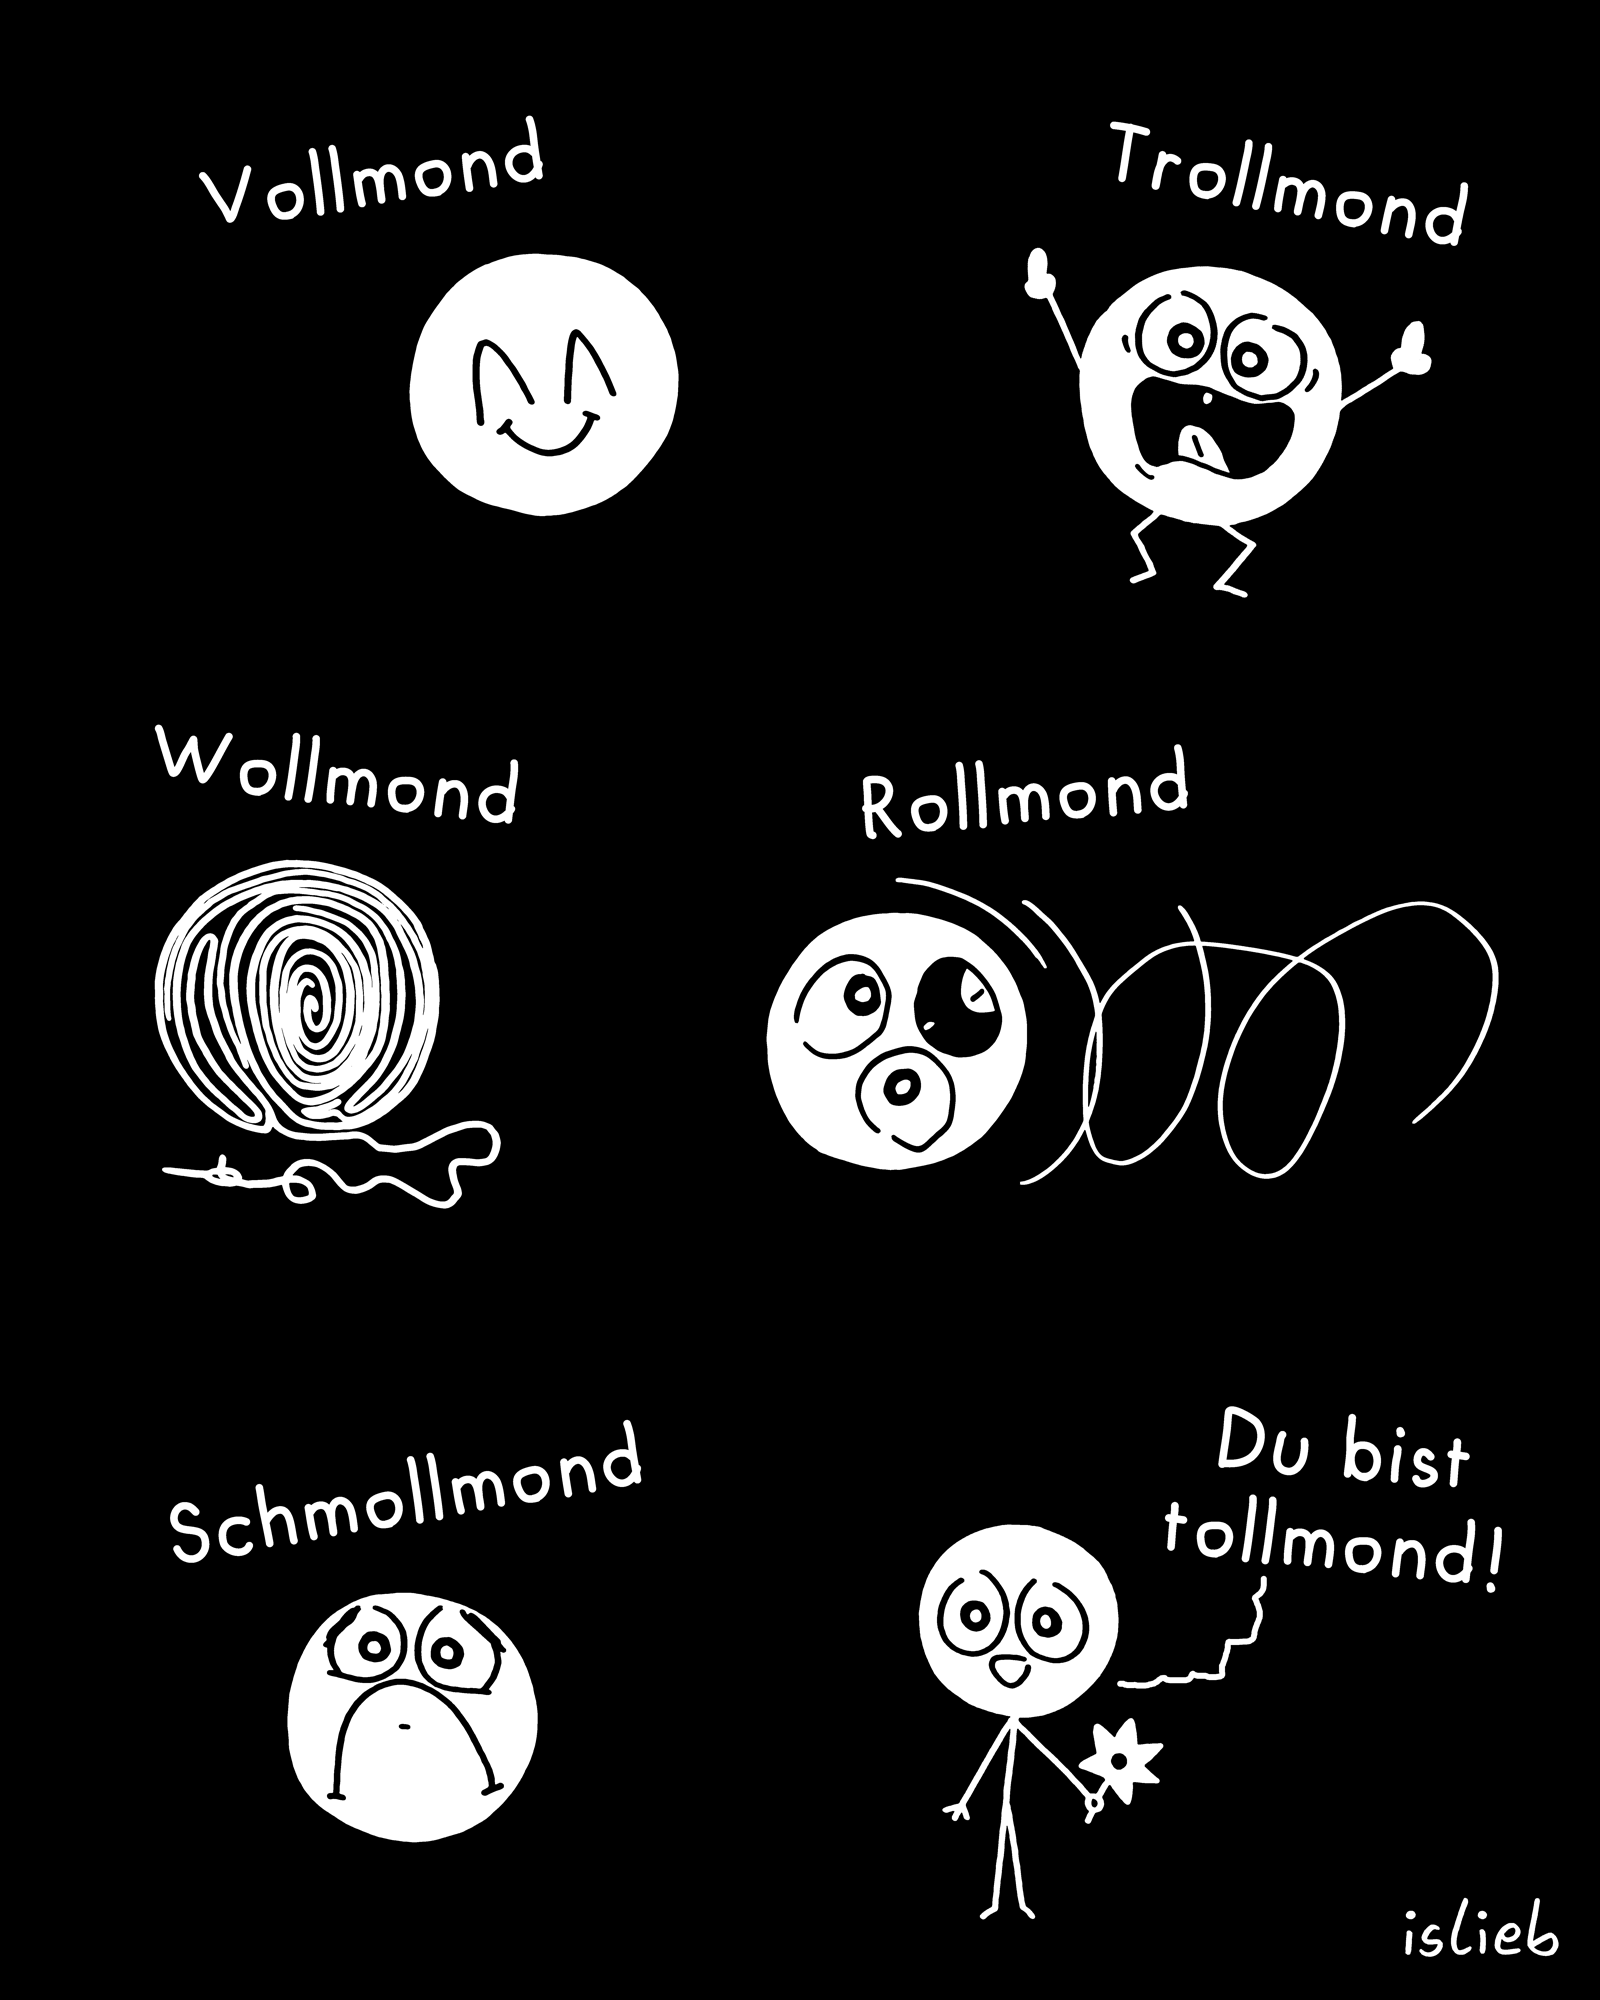 Gekrakelte Mond-Collage, bestehend aus: Vollmond, Trollmond, Wollmond, Rollmond, Schmollmond und einer Figur, die zur Leserschaft sagt: "Du bist tollmond!"